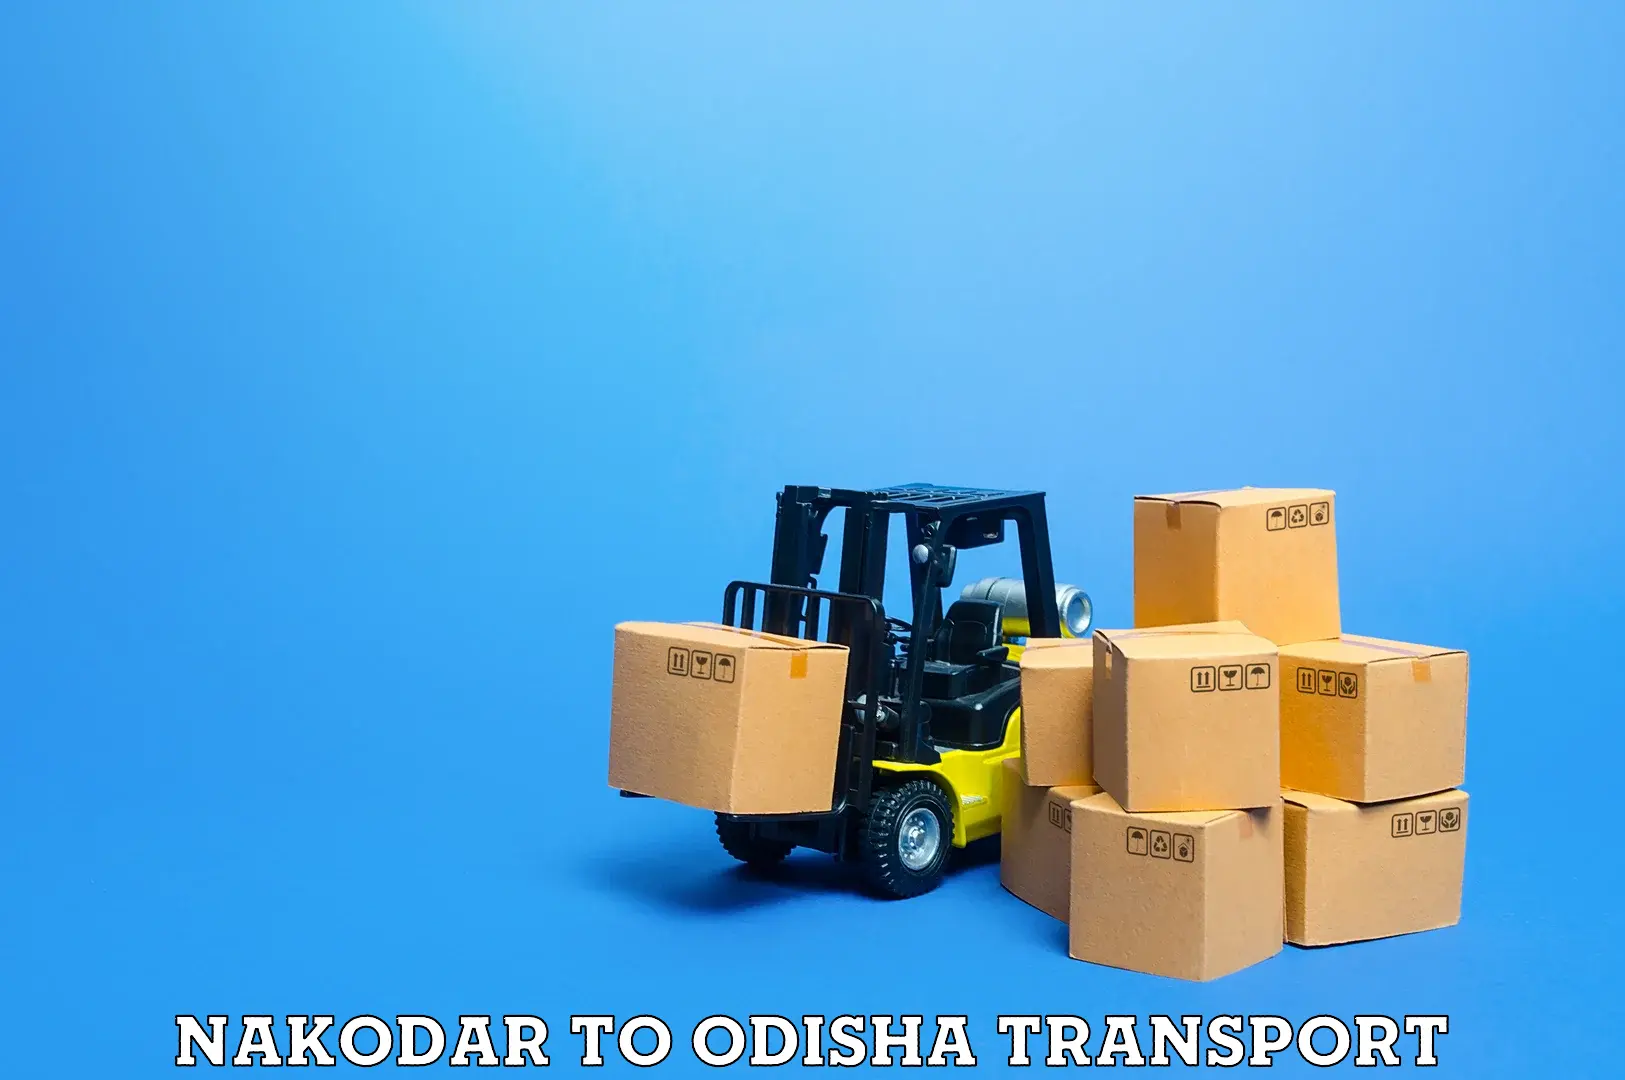 Nearest transport service Nakodar to Chandikhol